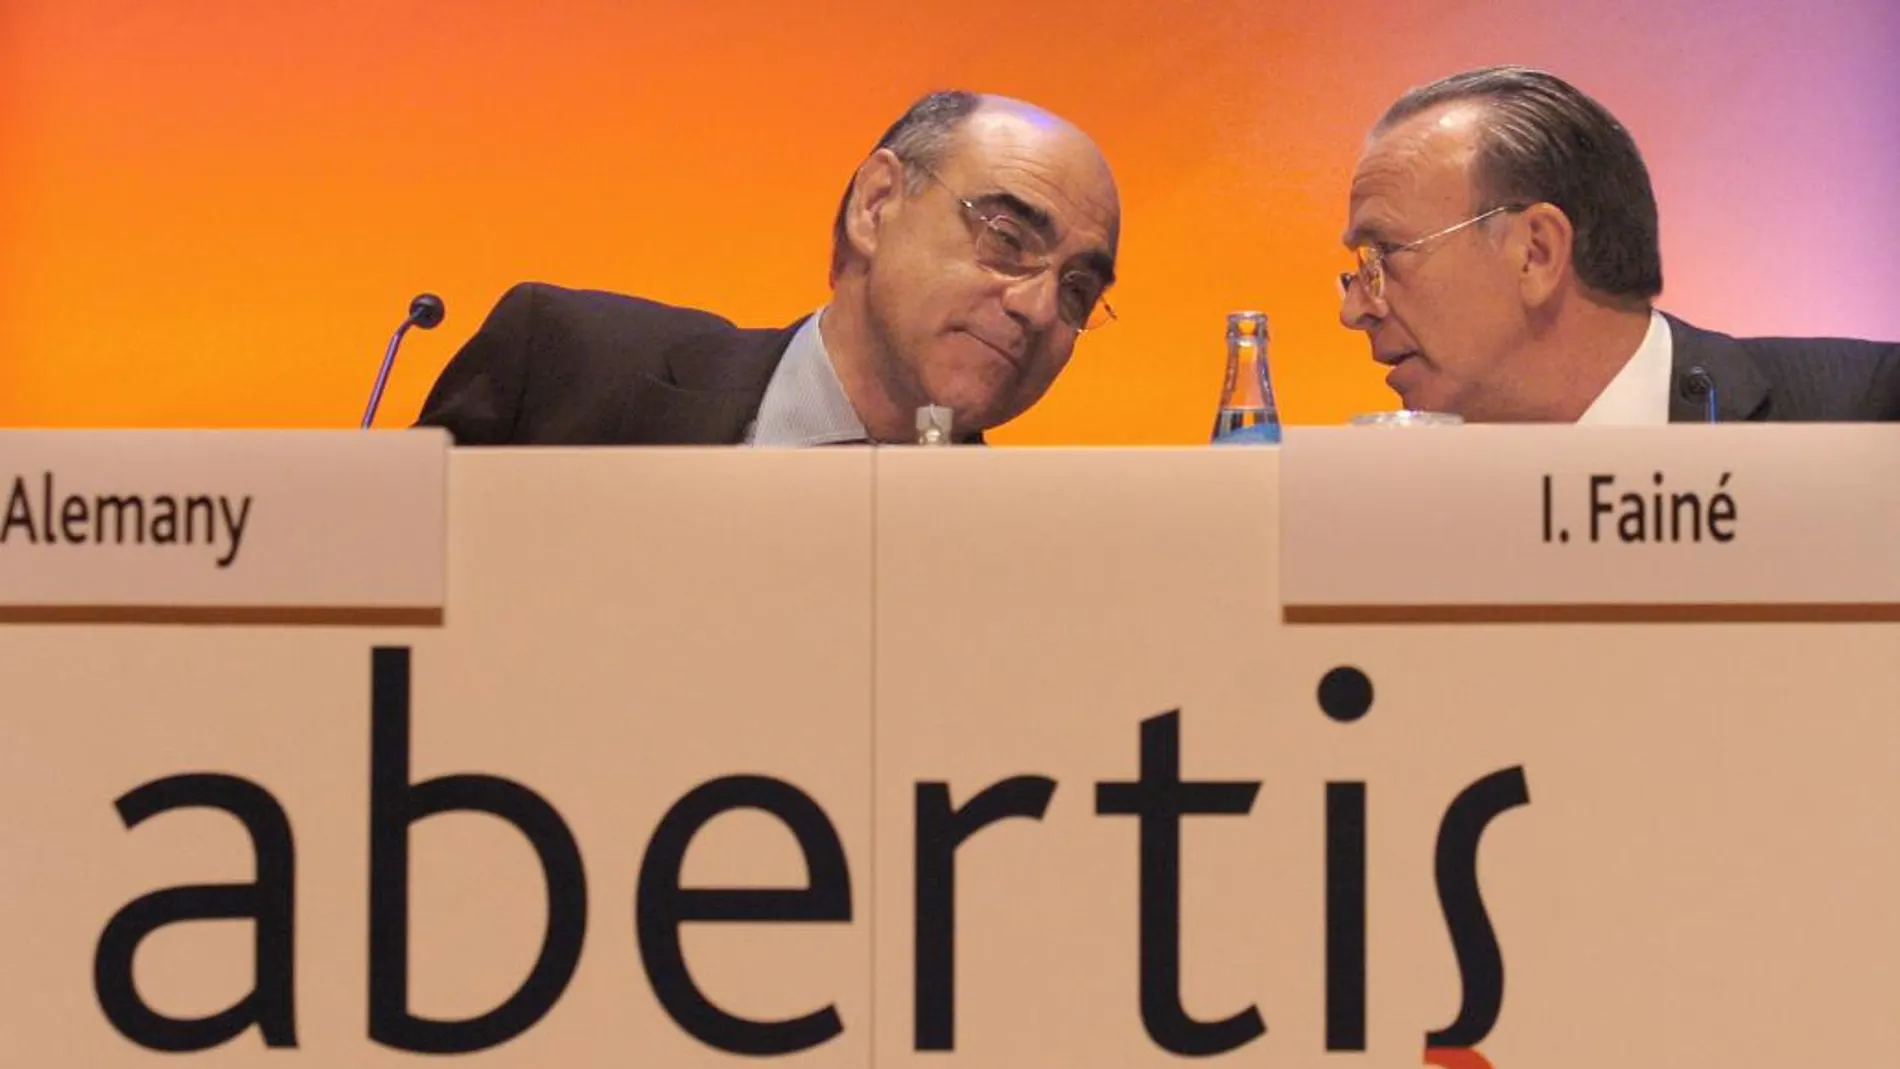 El presidente de Abertis Isidre Fainé conversa con el consejero delegado, Salvador Aleman